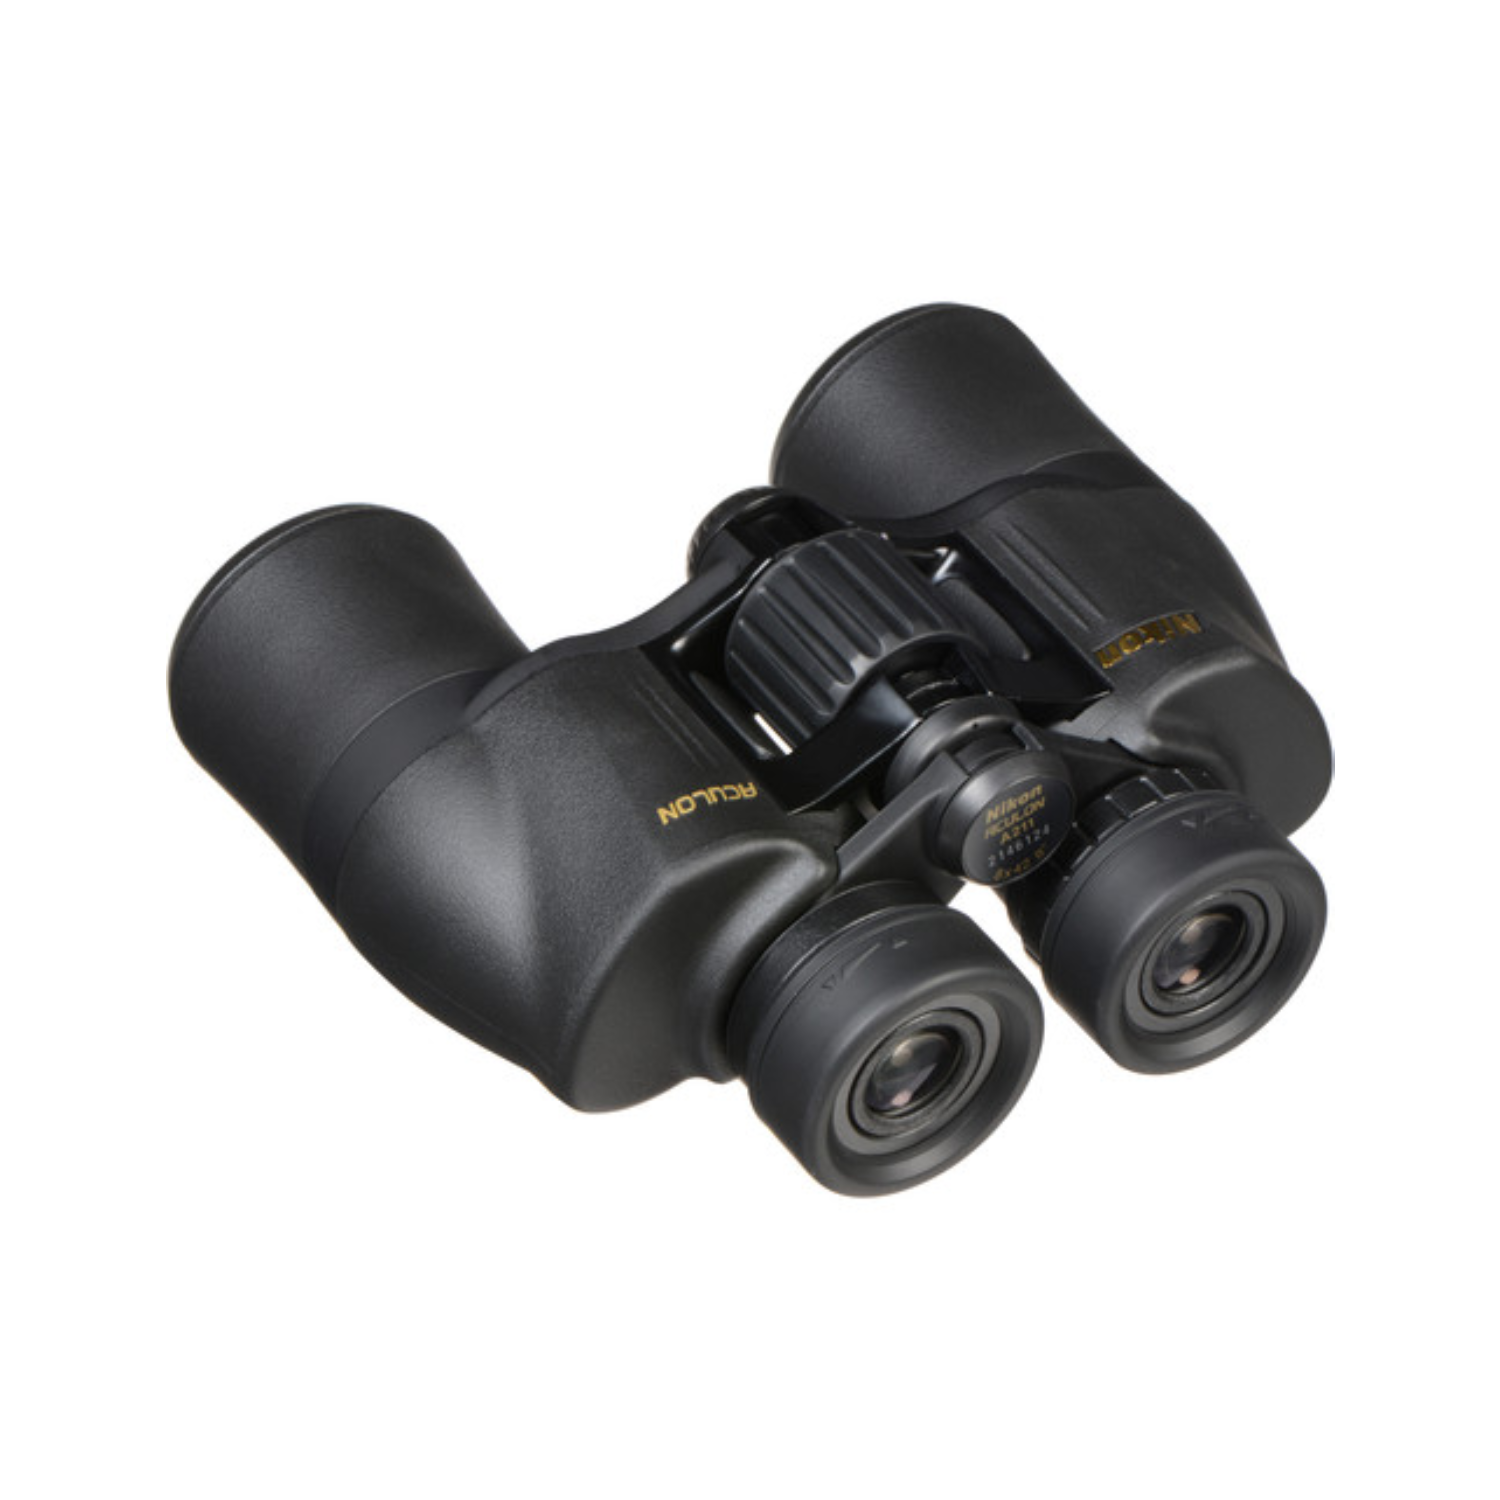 Nikon 8x42 Aculon A211 Binoculars (Black)